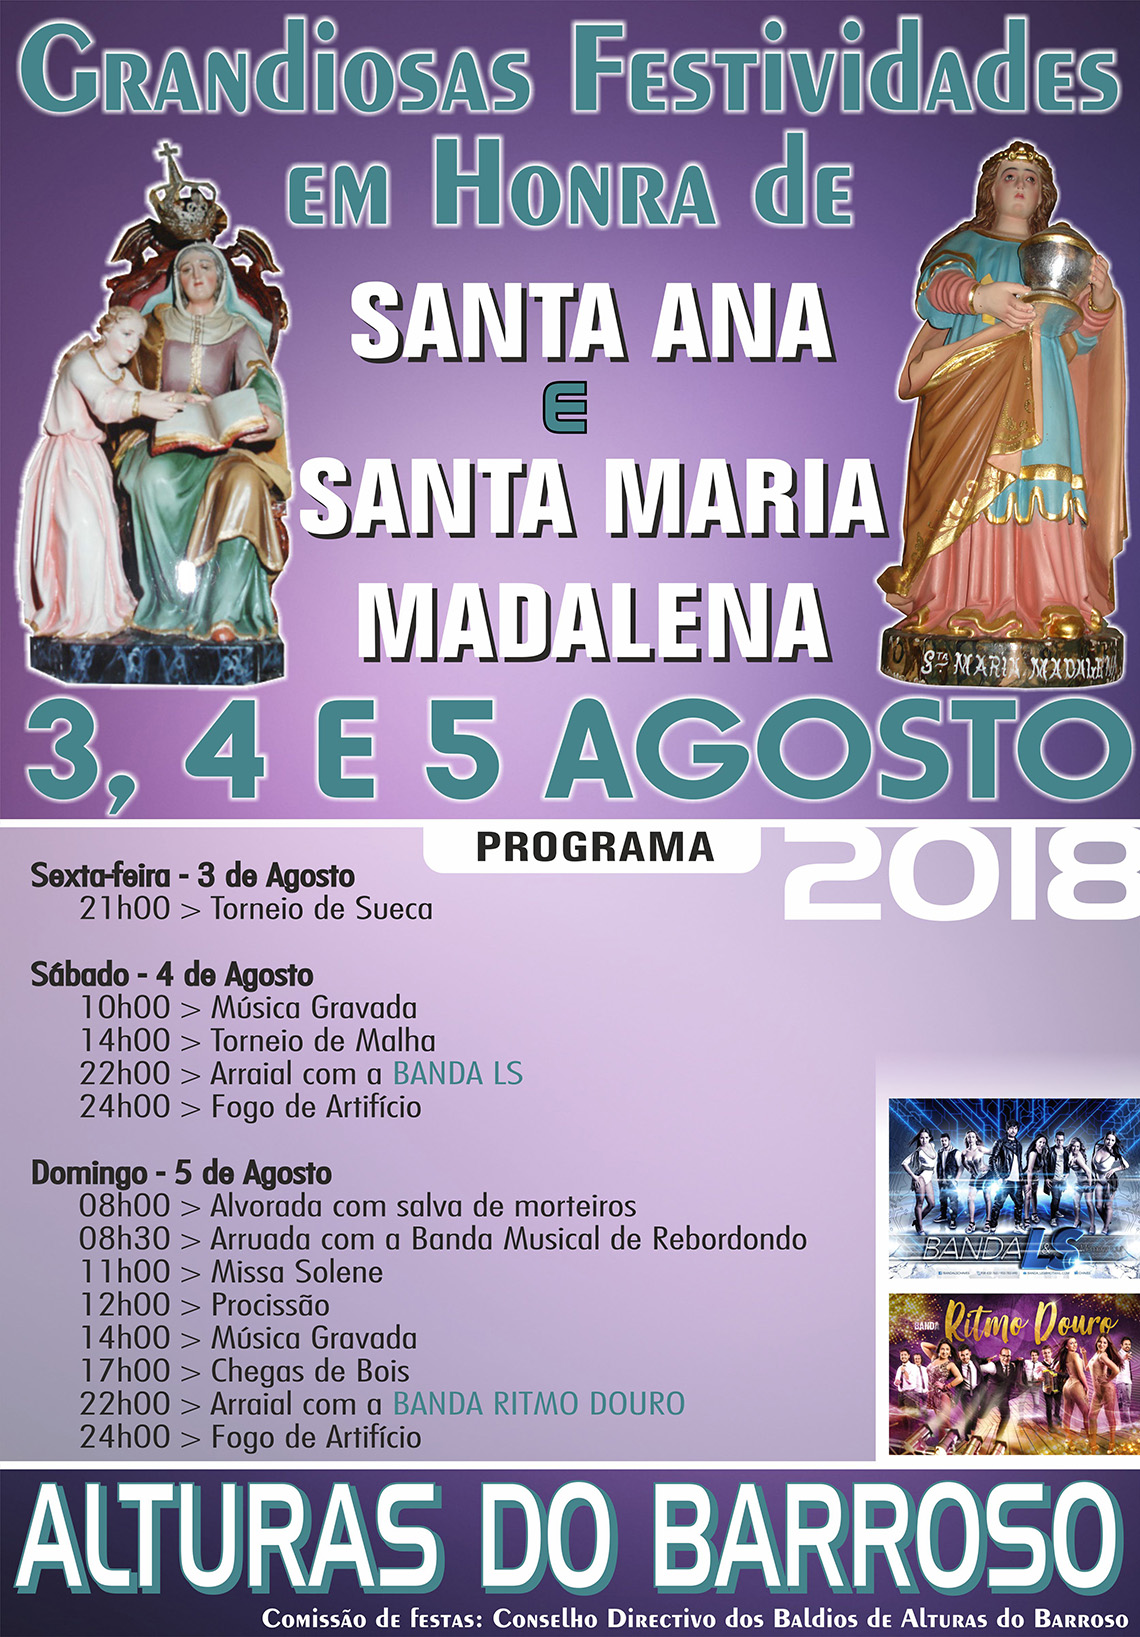 Festividades em Honra de Santa Ana e Santa Maria Madalena